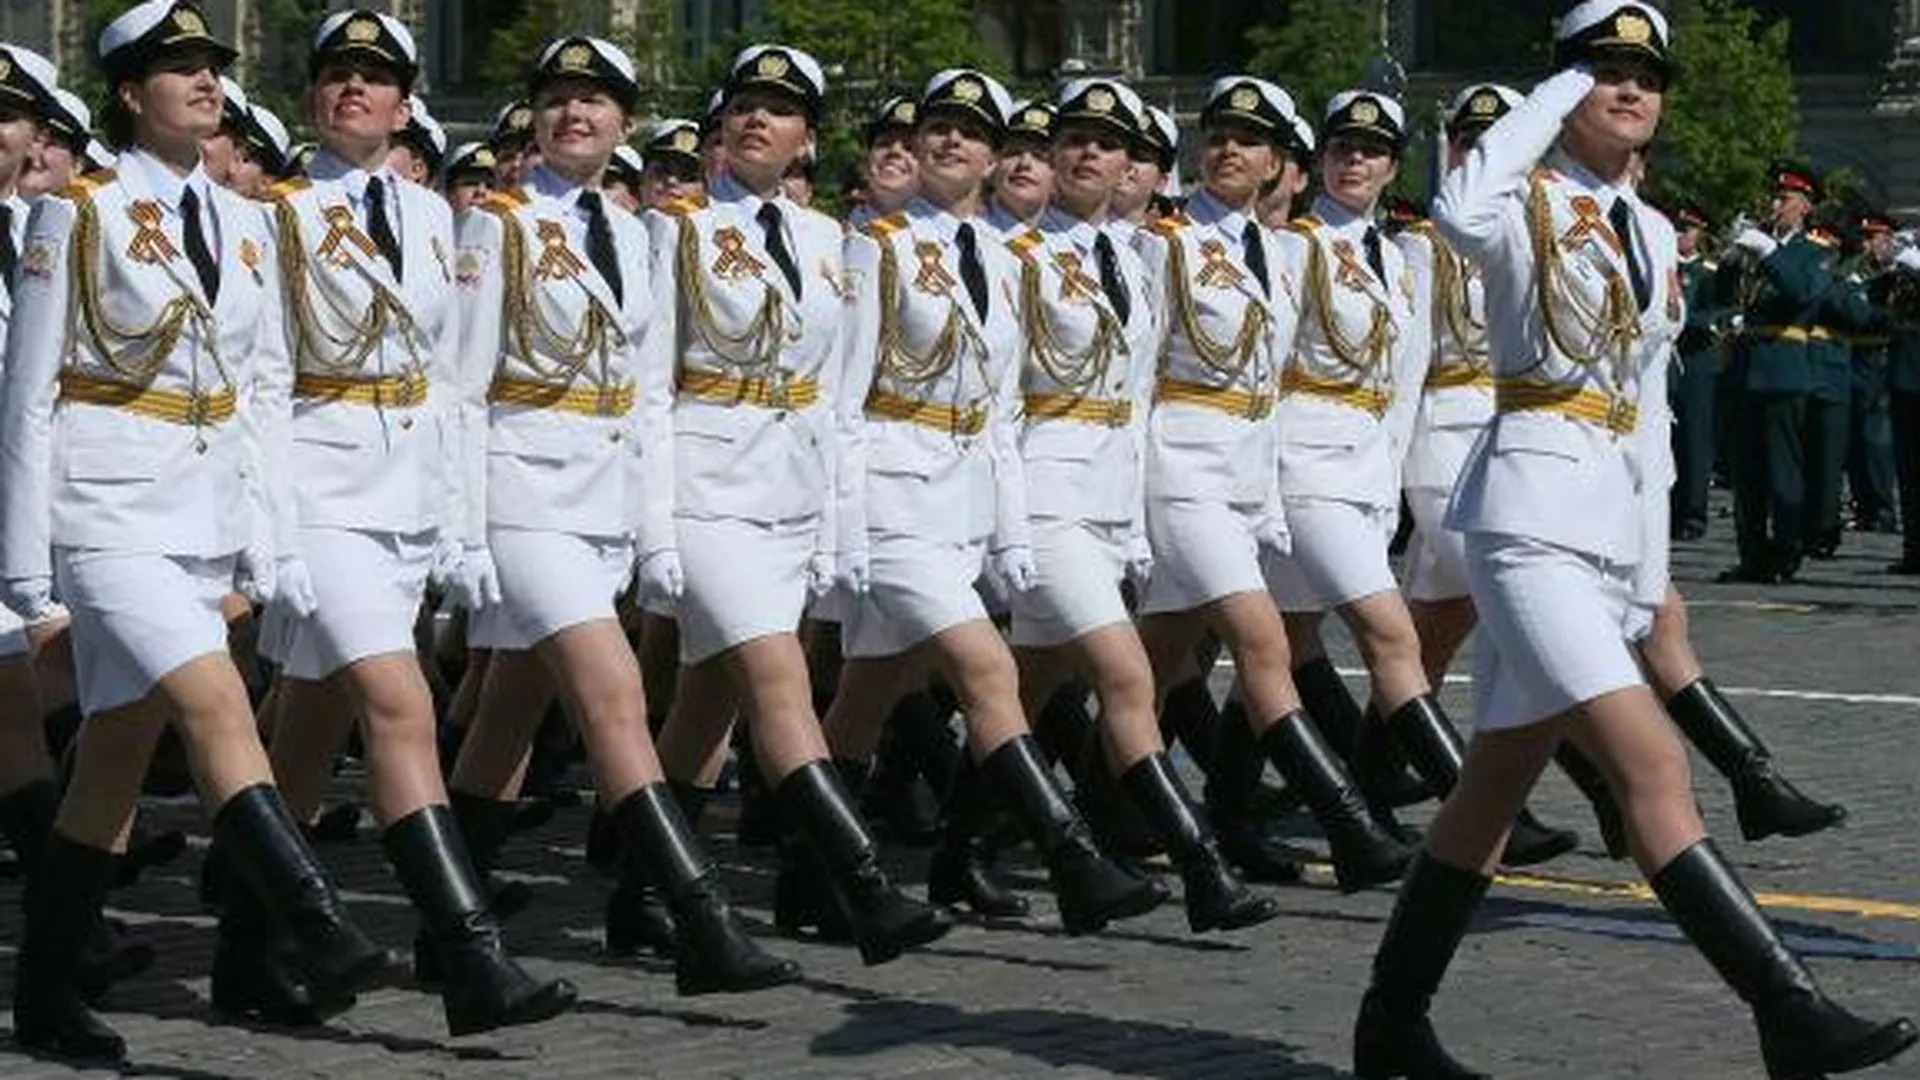 Зарубежные СМИ в шоке от российской «армии мини-юбок»